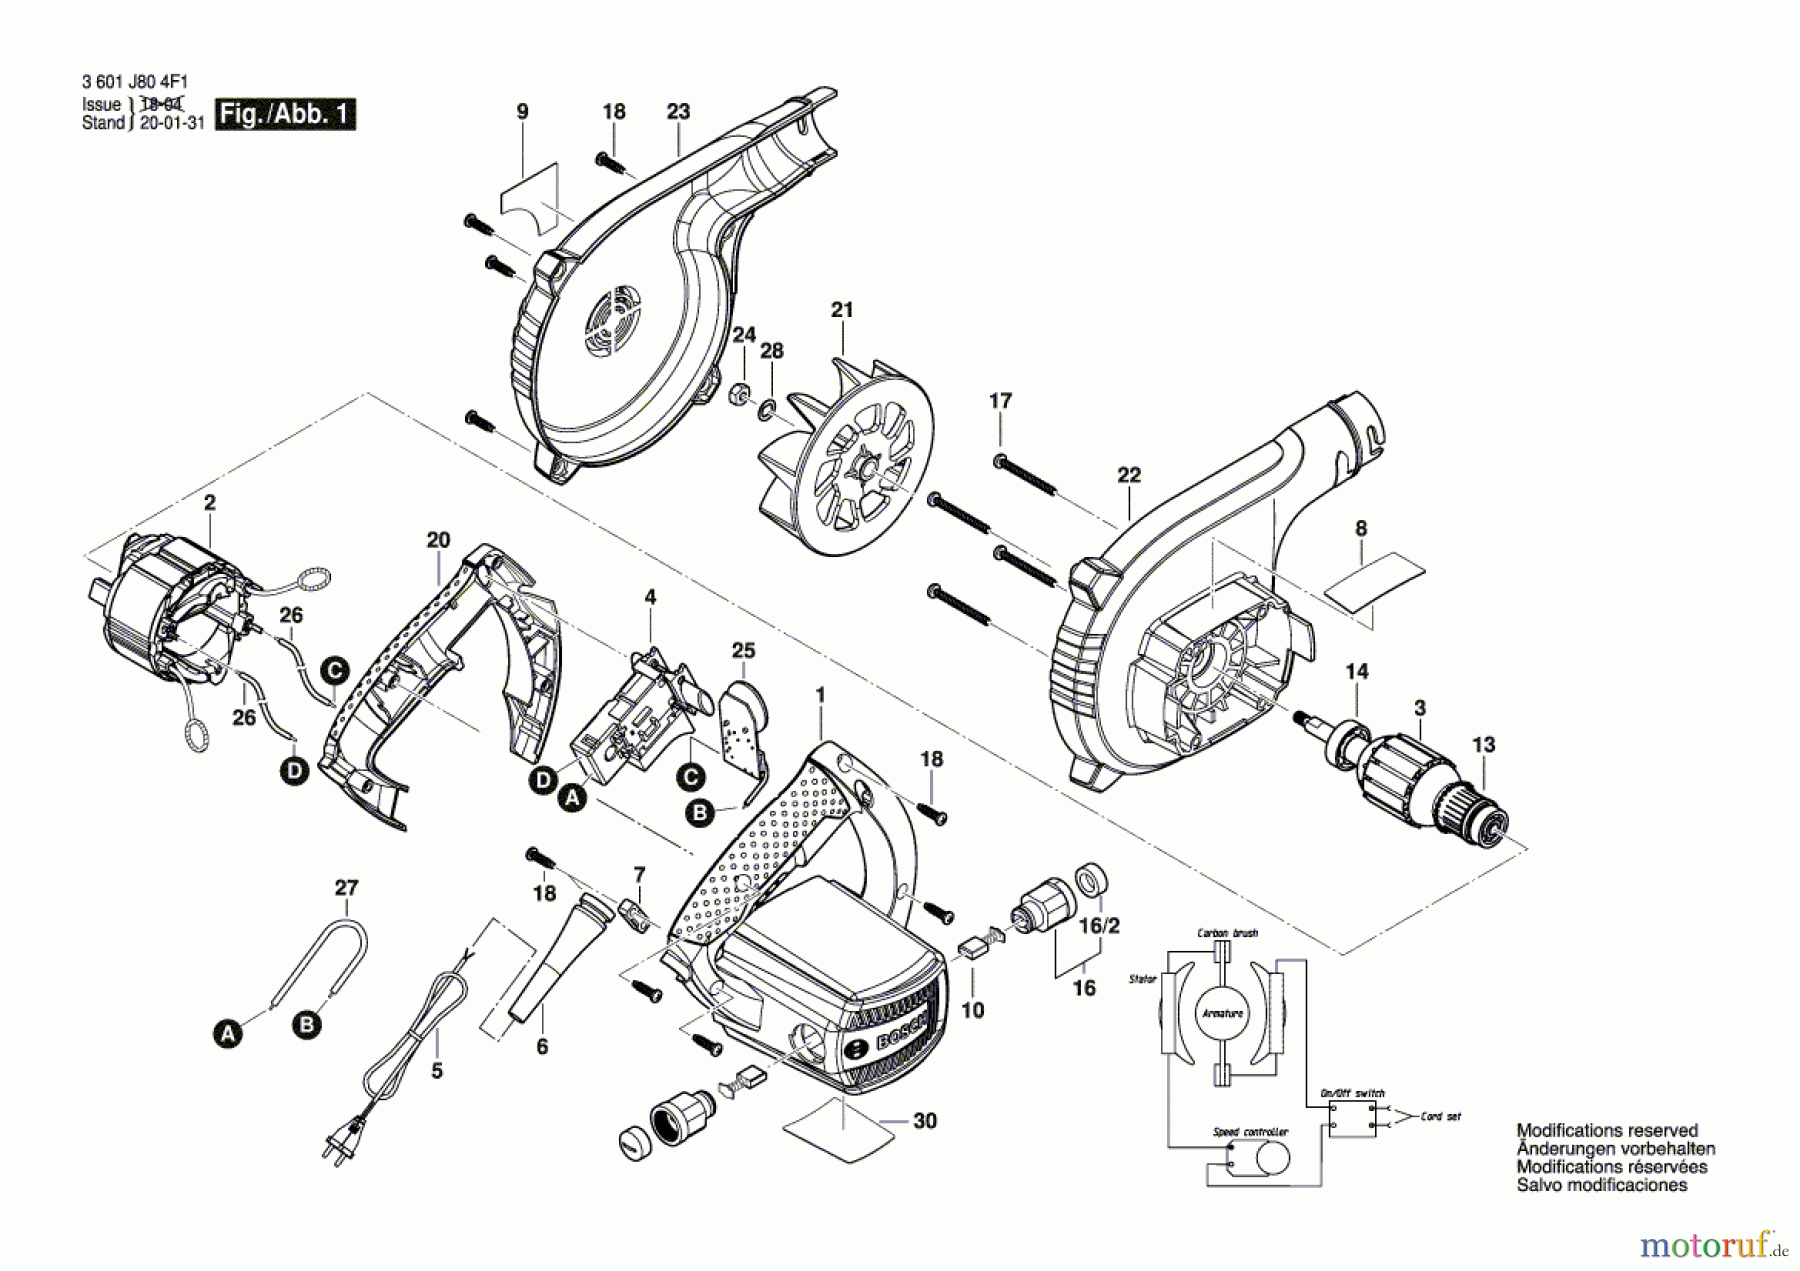  Bosch Werkzeug Druckgebläse GBL 800 E Seite 1